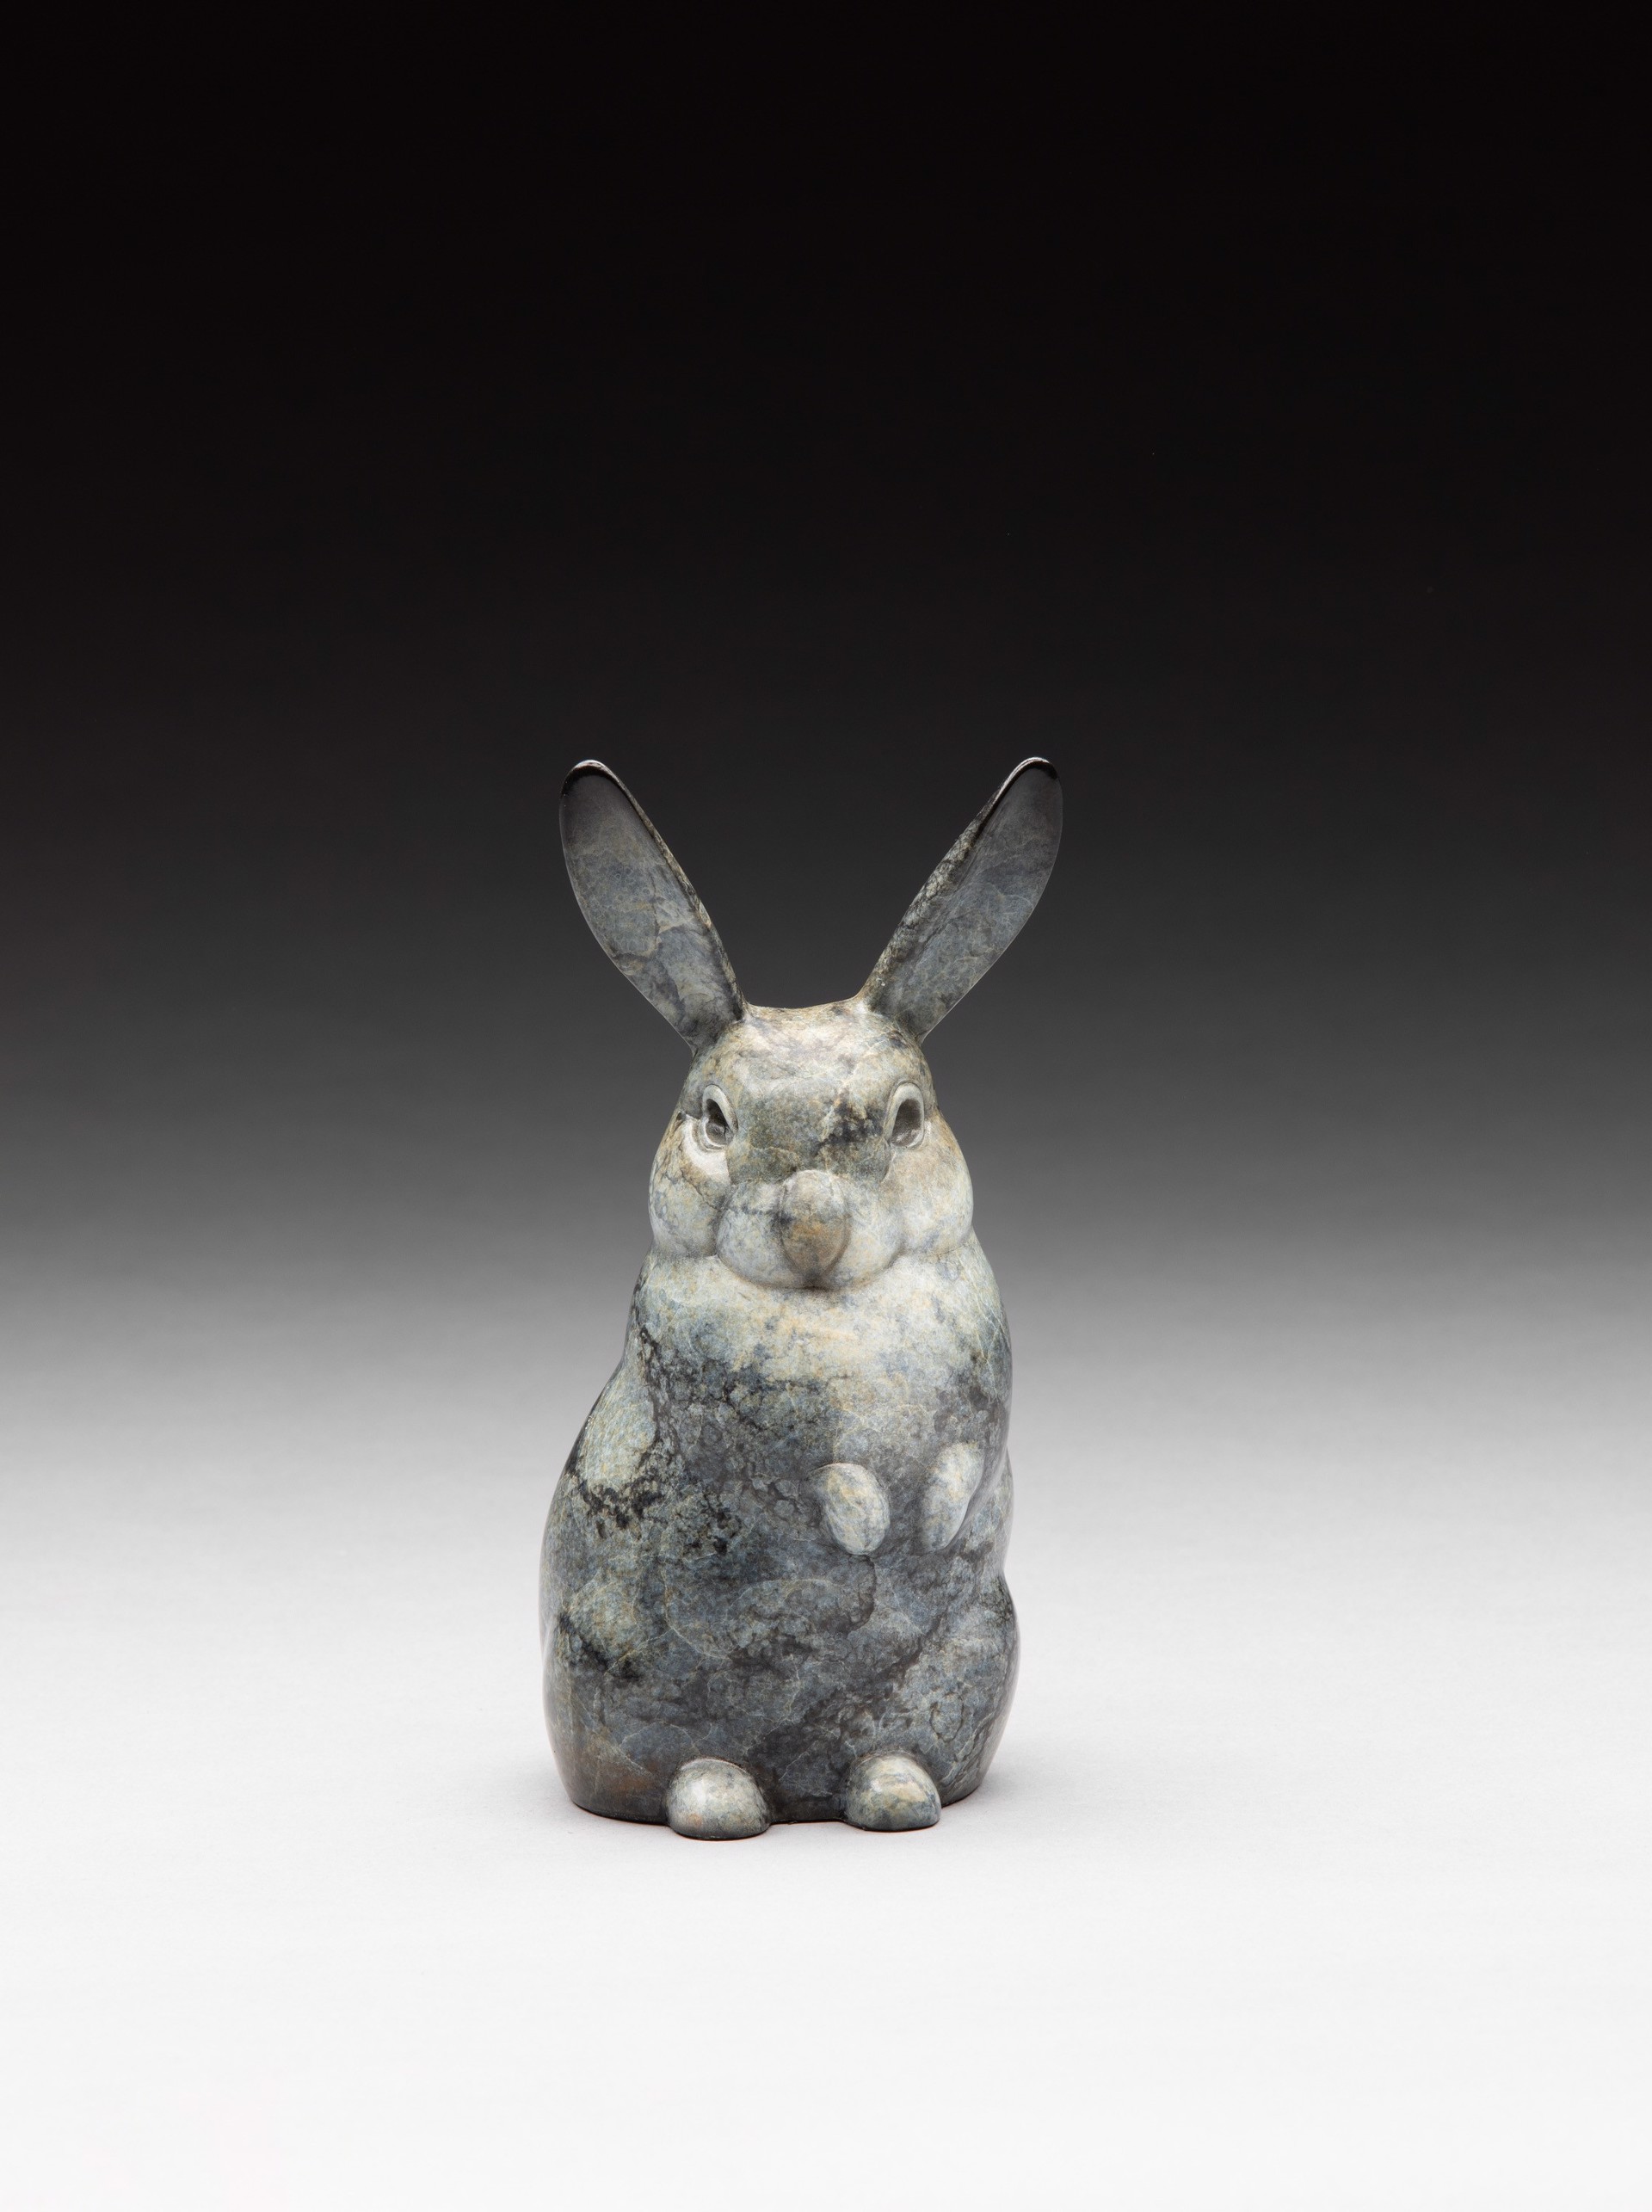 Bunny - Alpha by Joshua Tobey